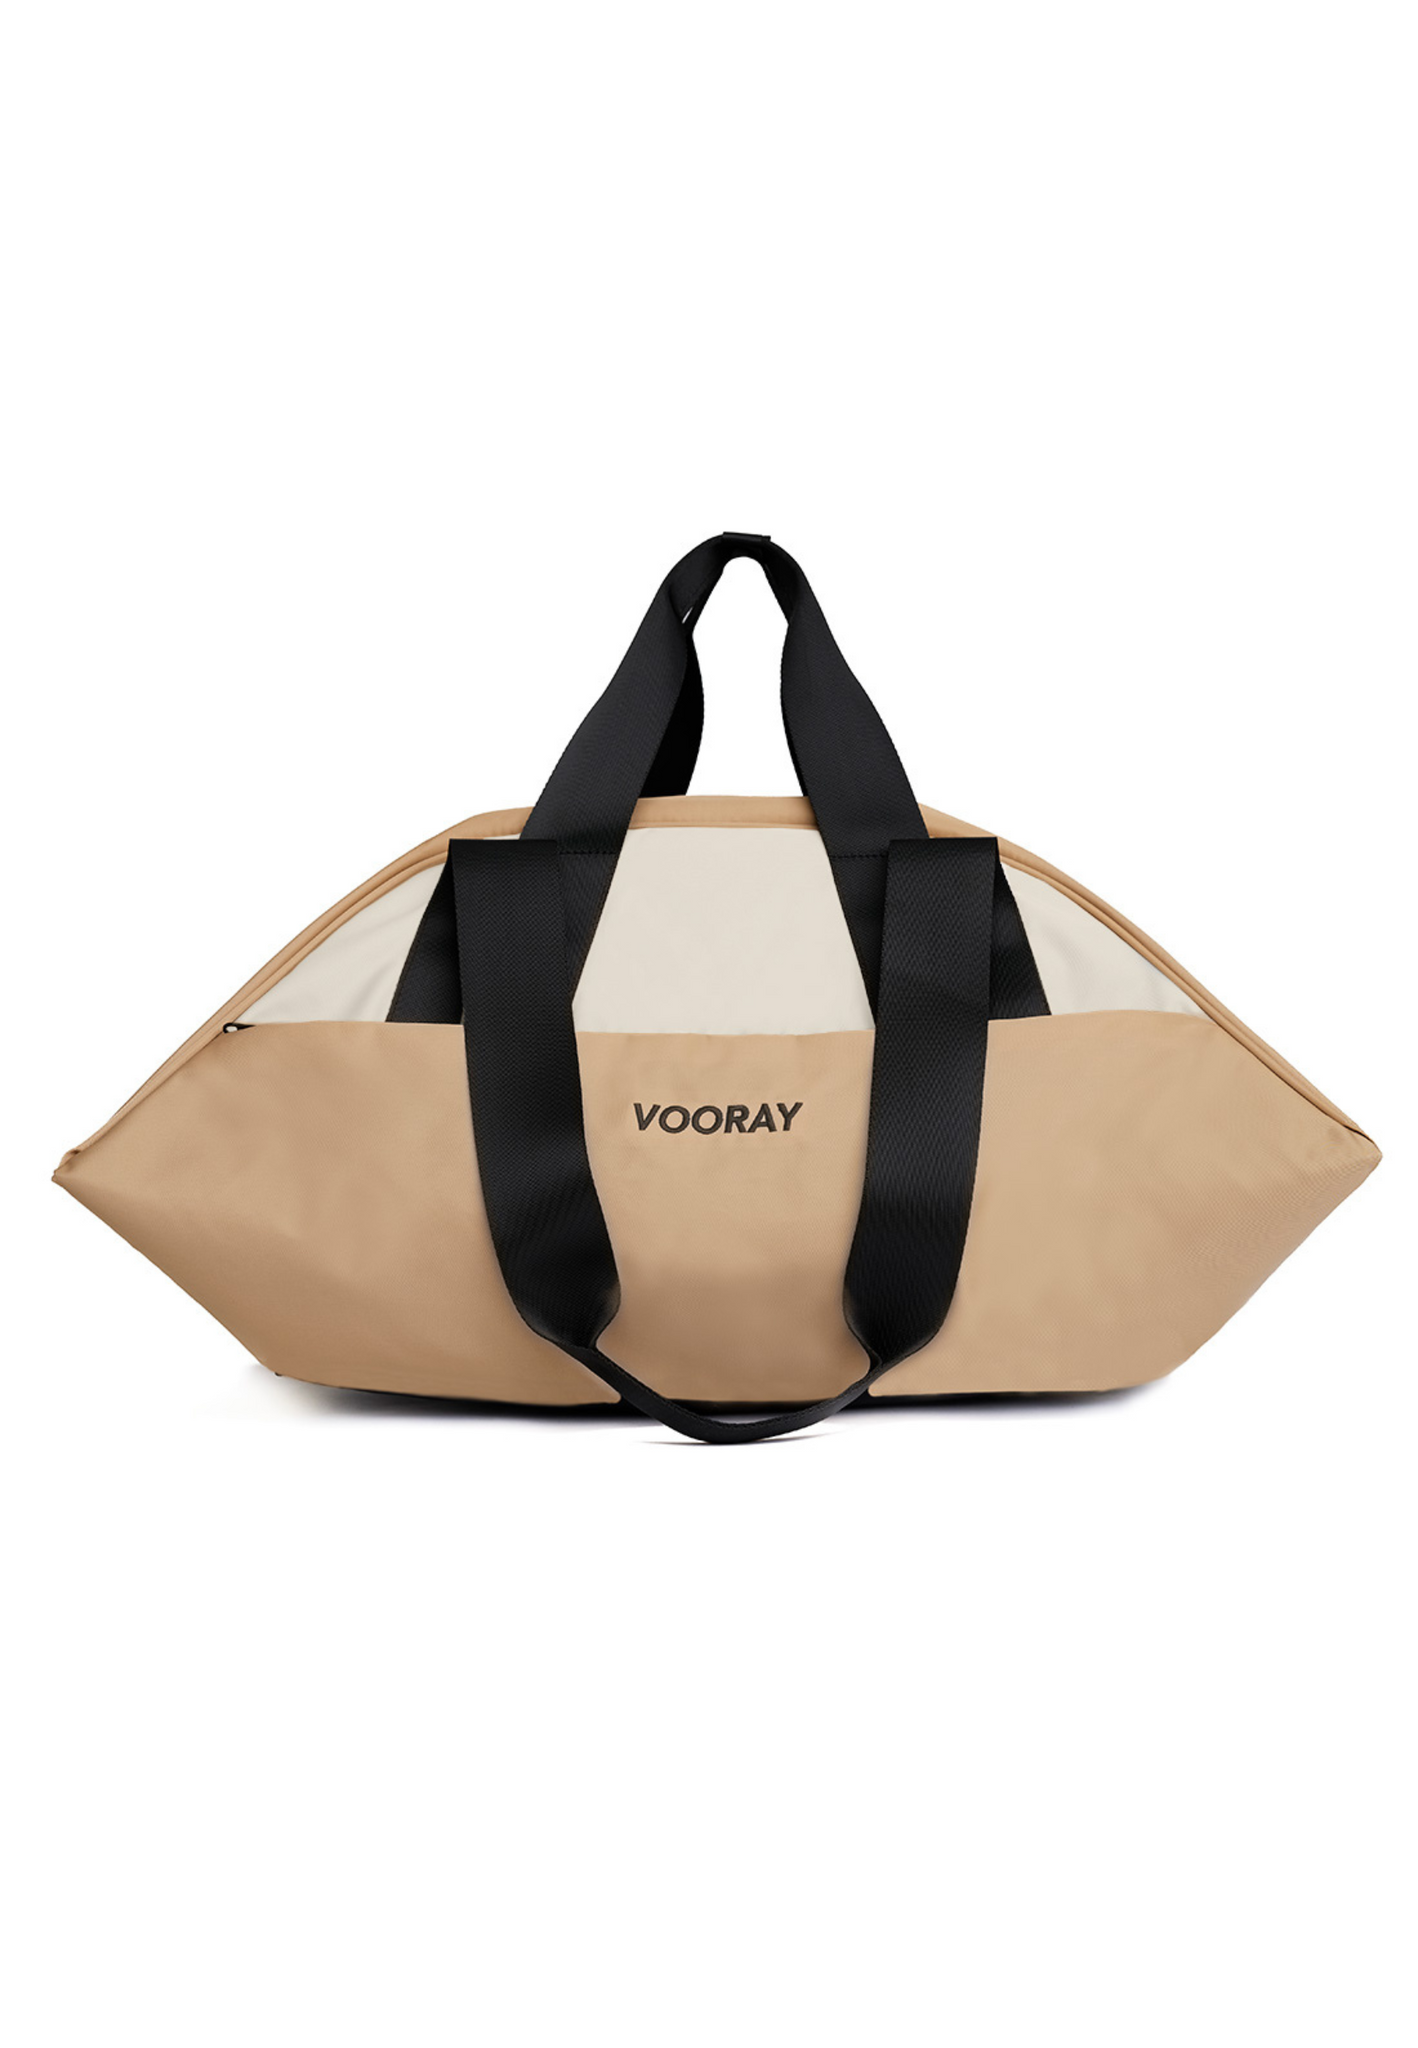 Vooray Studio Duffel - ideal para mujeres, hombres y niños. - Bolsa de deporte perfecta, bolsa de gimnasio y bolsa de viaje con estilo